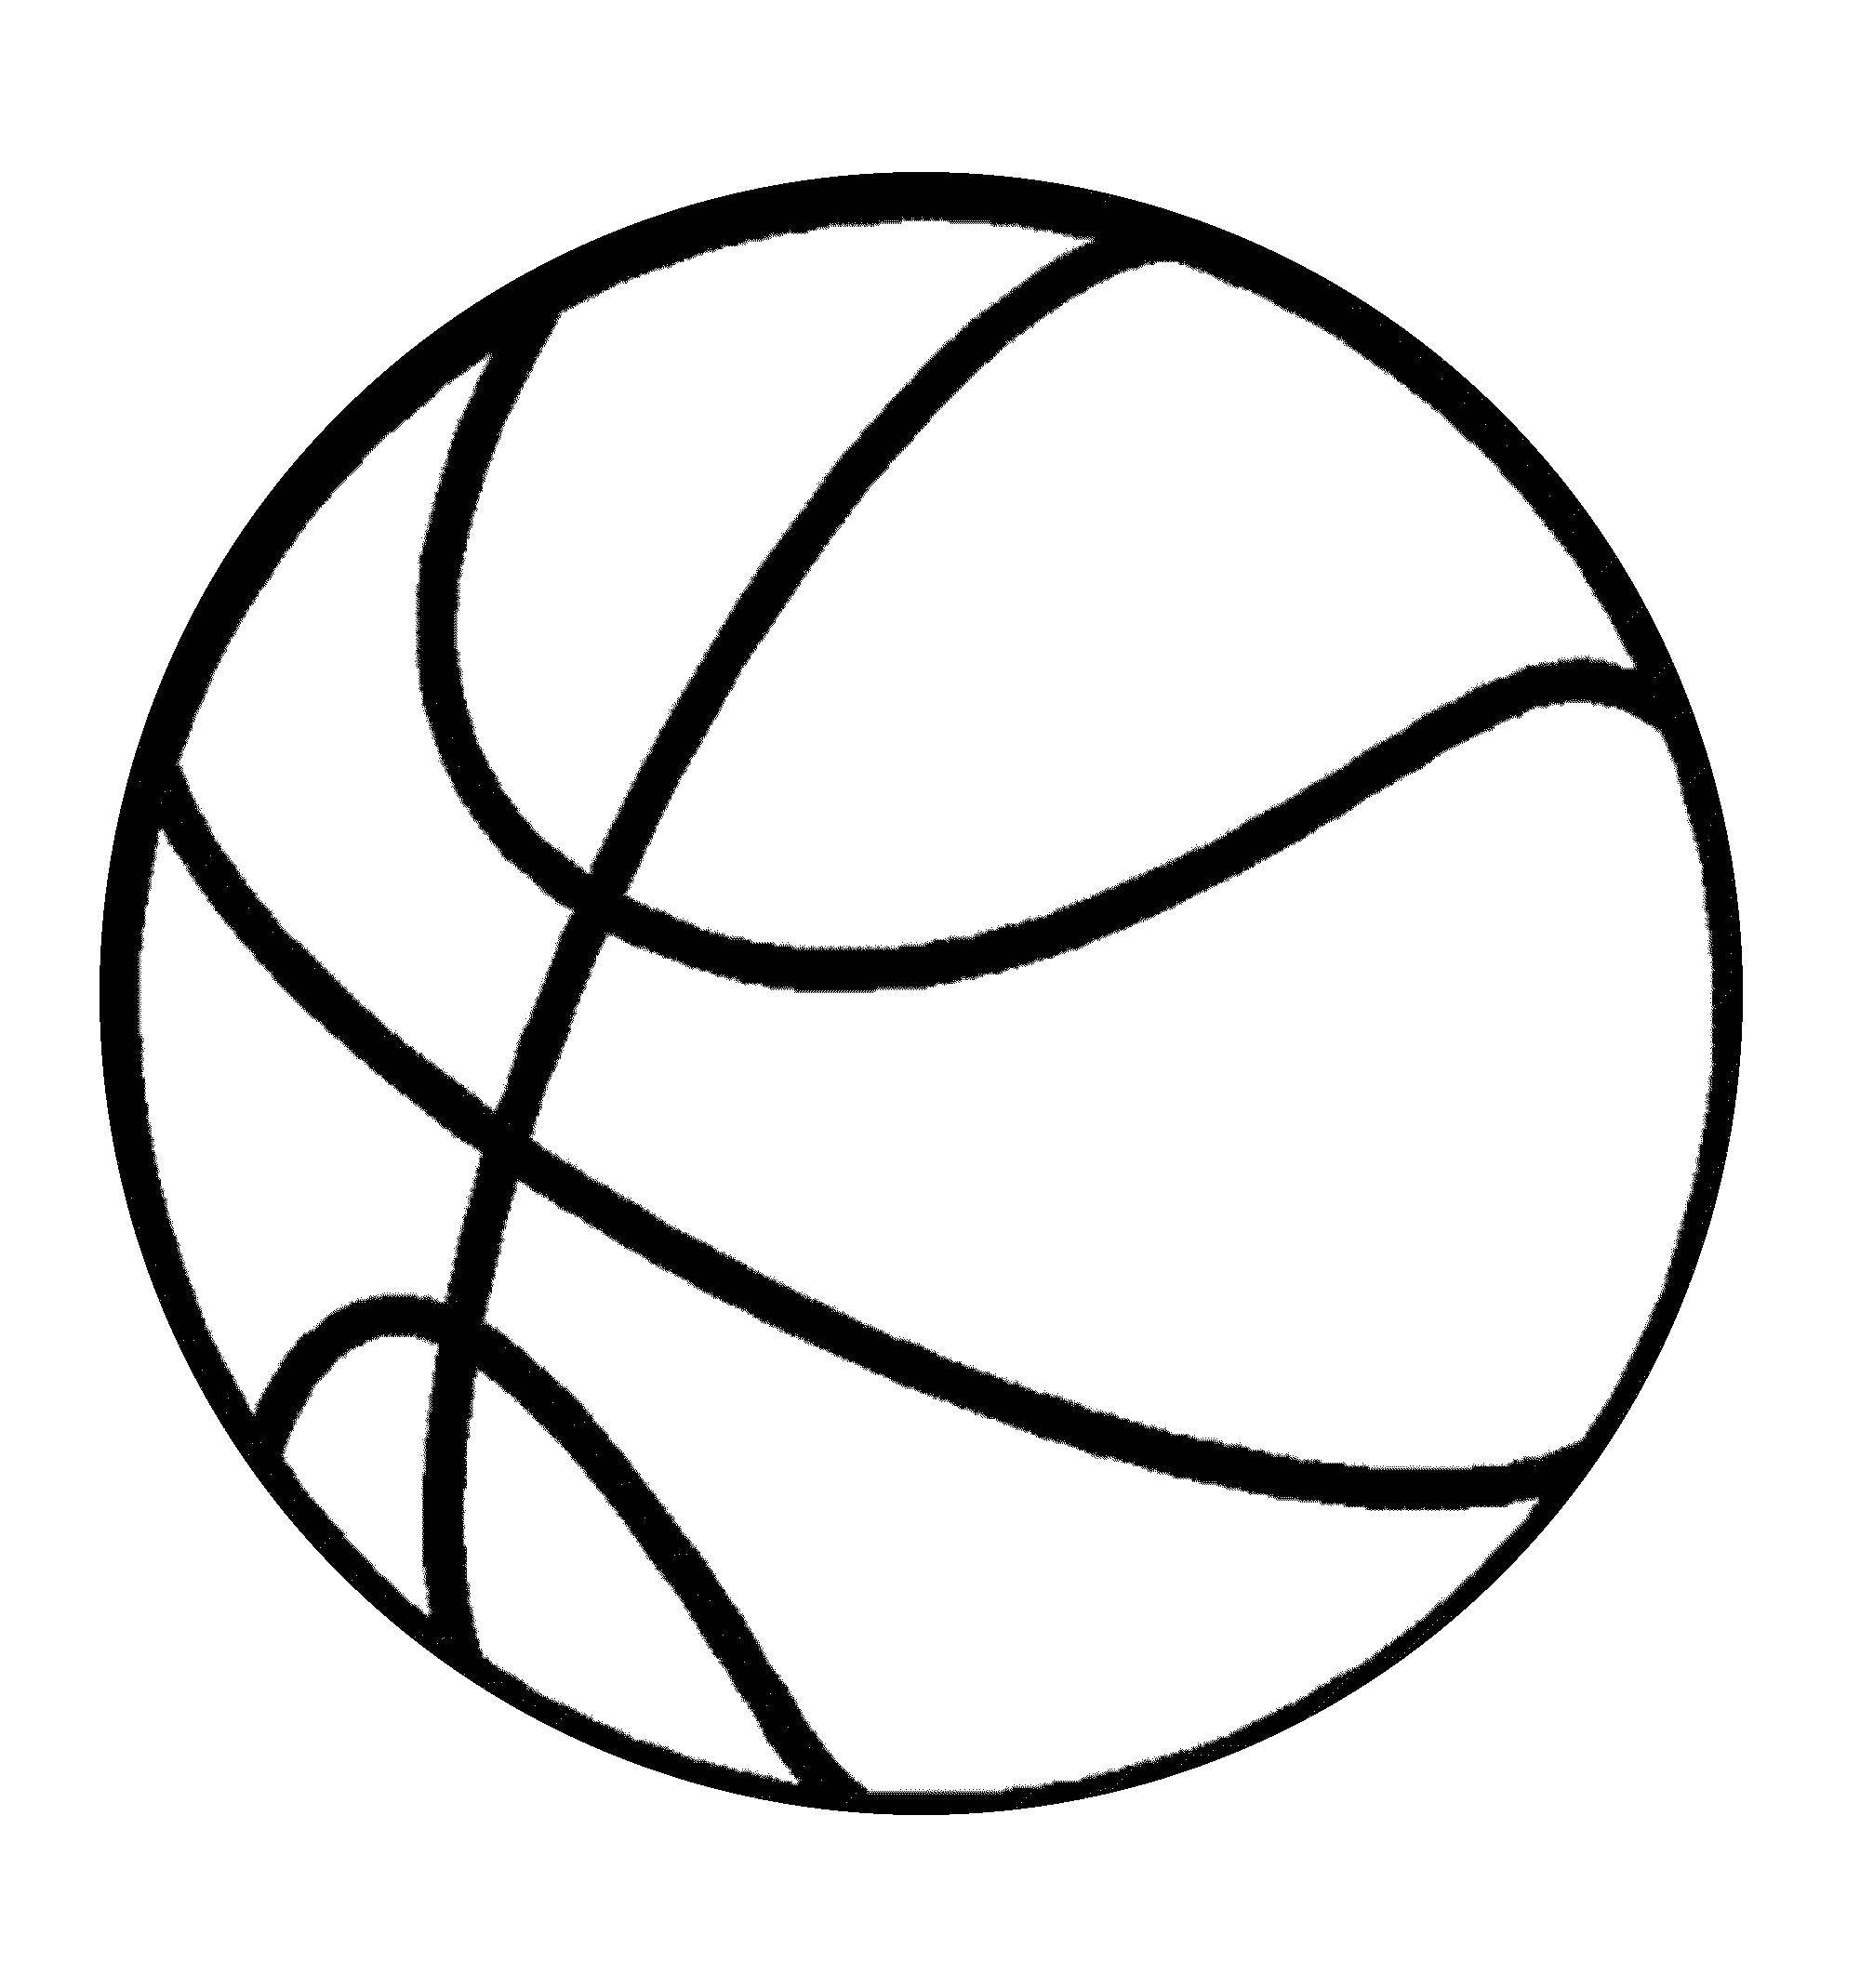 Название: Раскраска Баскетбольный мяч. Категория: Спорт. Теги: Спорт, баскетбол, мяч, игра.